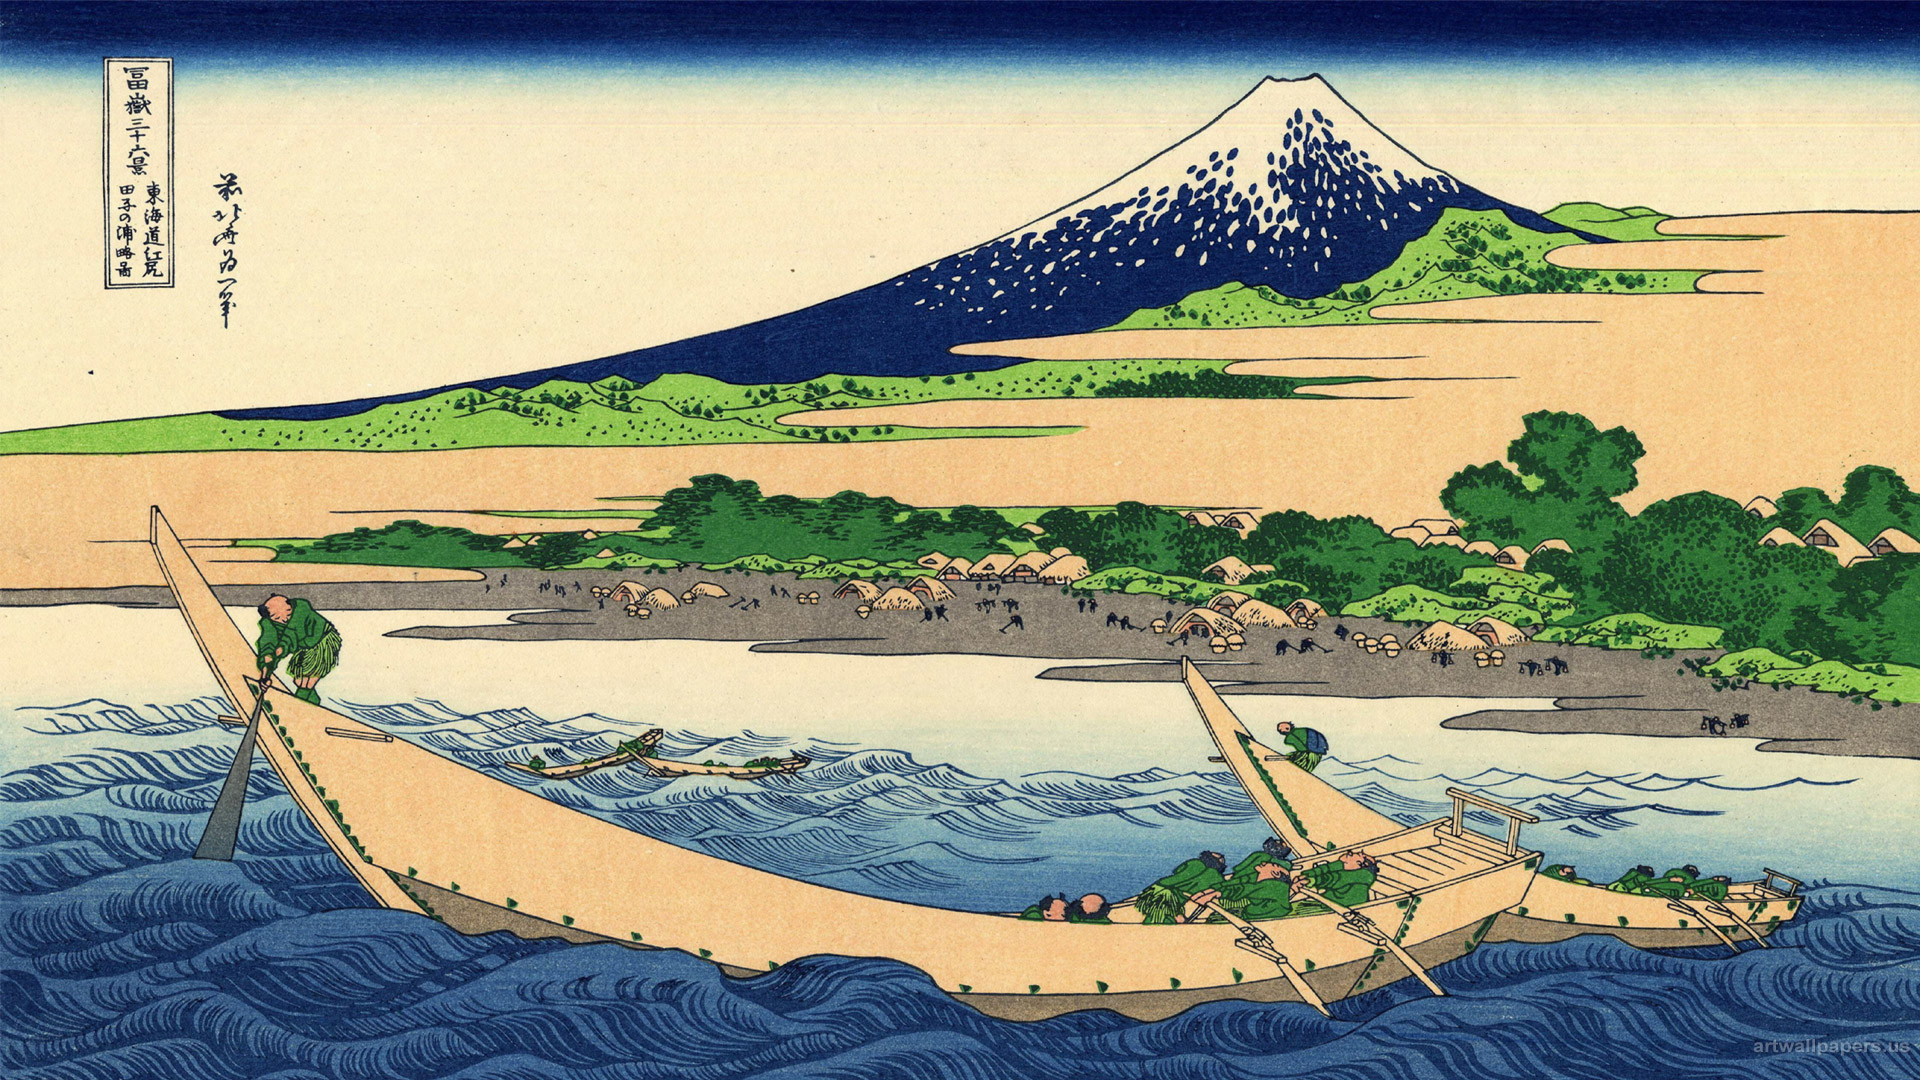 Hokusai Wallpaper, The Great Wave At Kanagawa, Art - Shore Of Tago Bay Ejiri At Tokaido - HD Wallpaper 